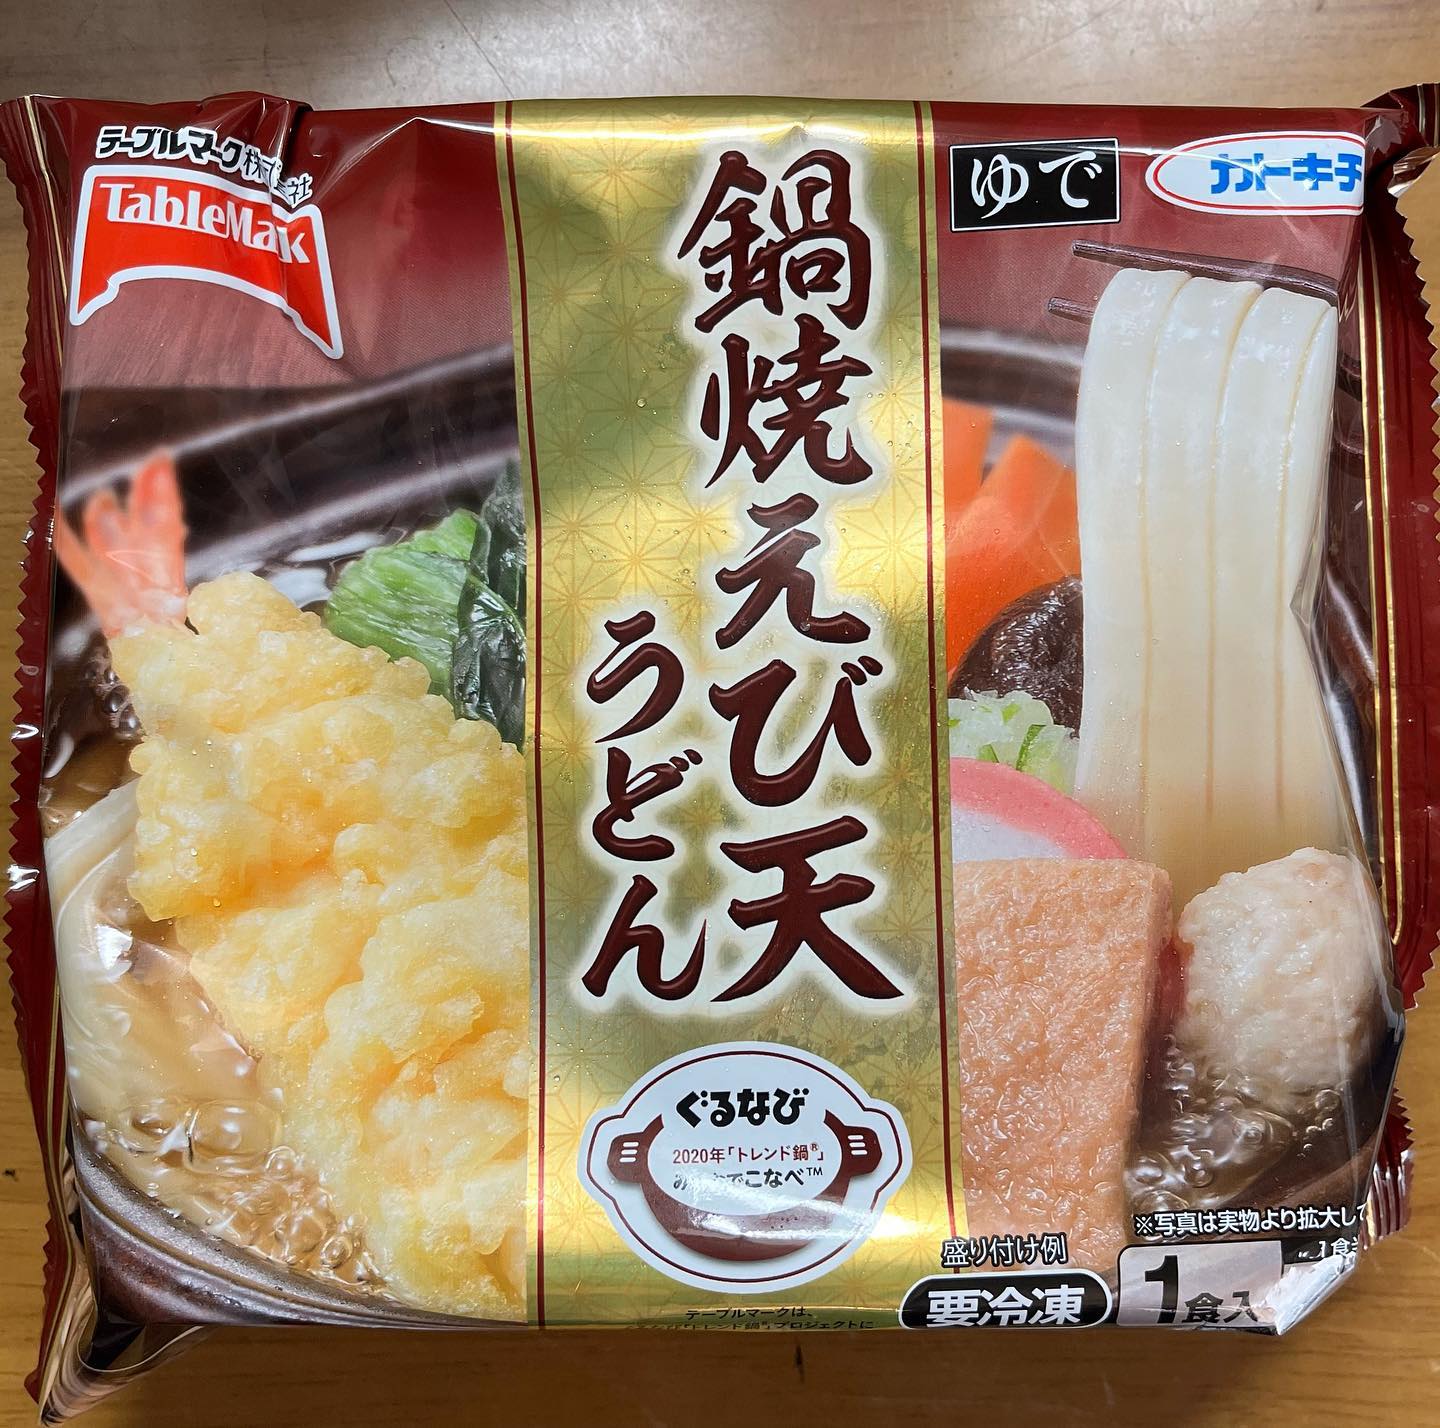 口コミ投稿：テーブルマークさんからうどん3種をいただきました。鍋焼えび🦐天うどんえびの天ぷら…